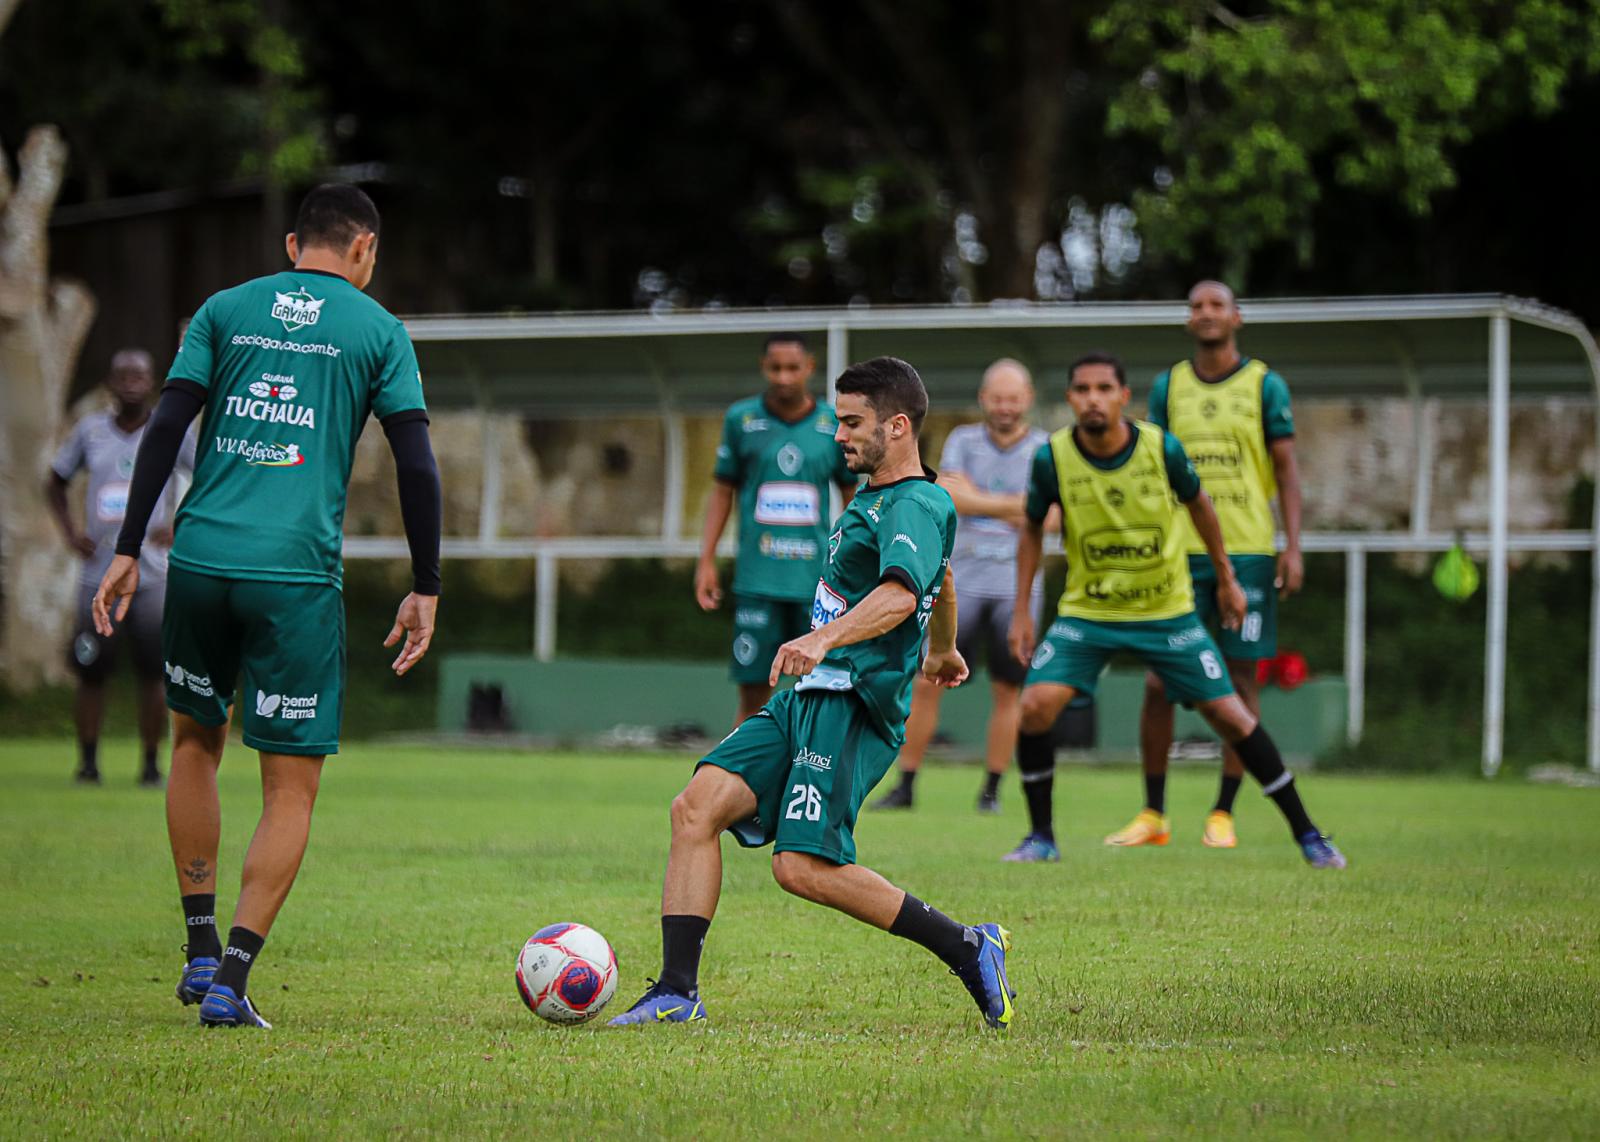 Elenco se reapresenta e Manaus inicia preparação para a Série C do Brasileiro